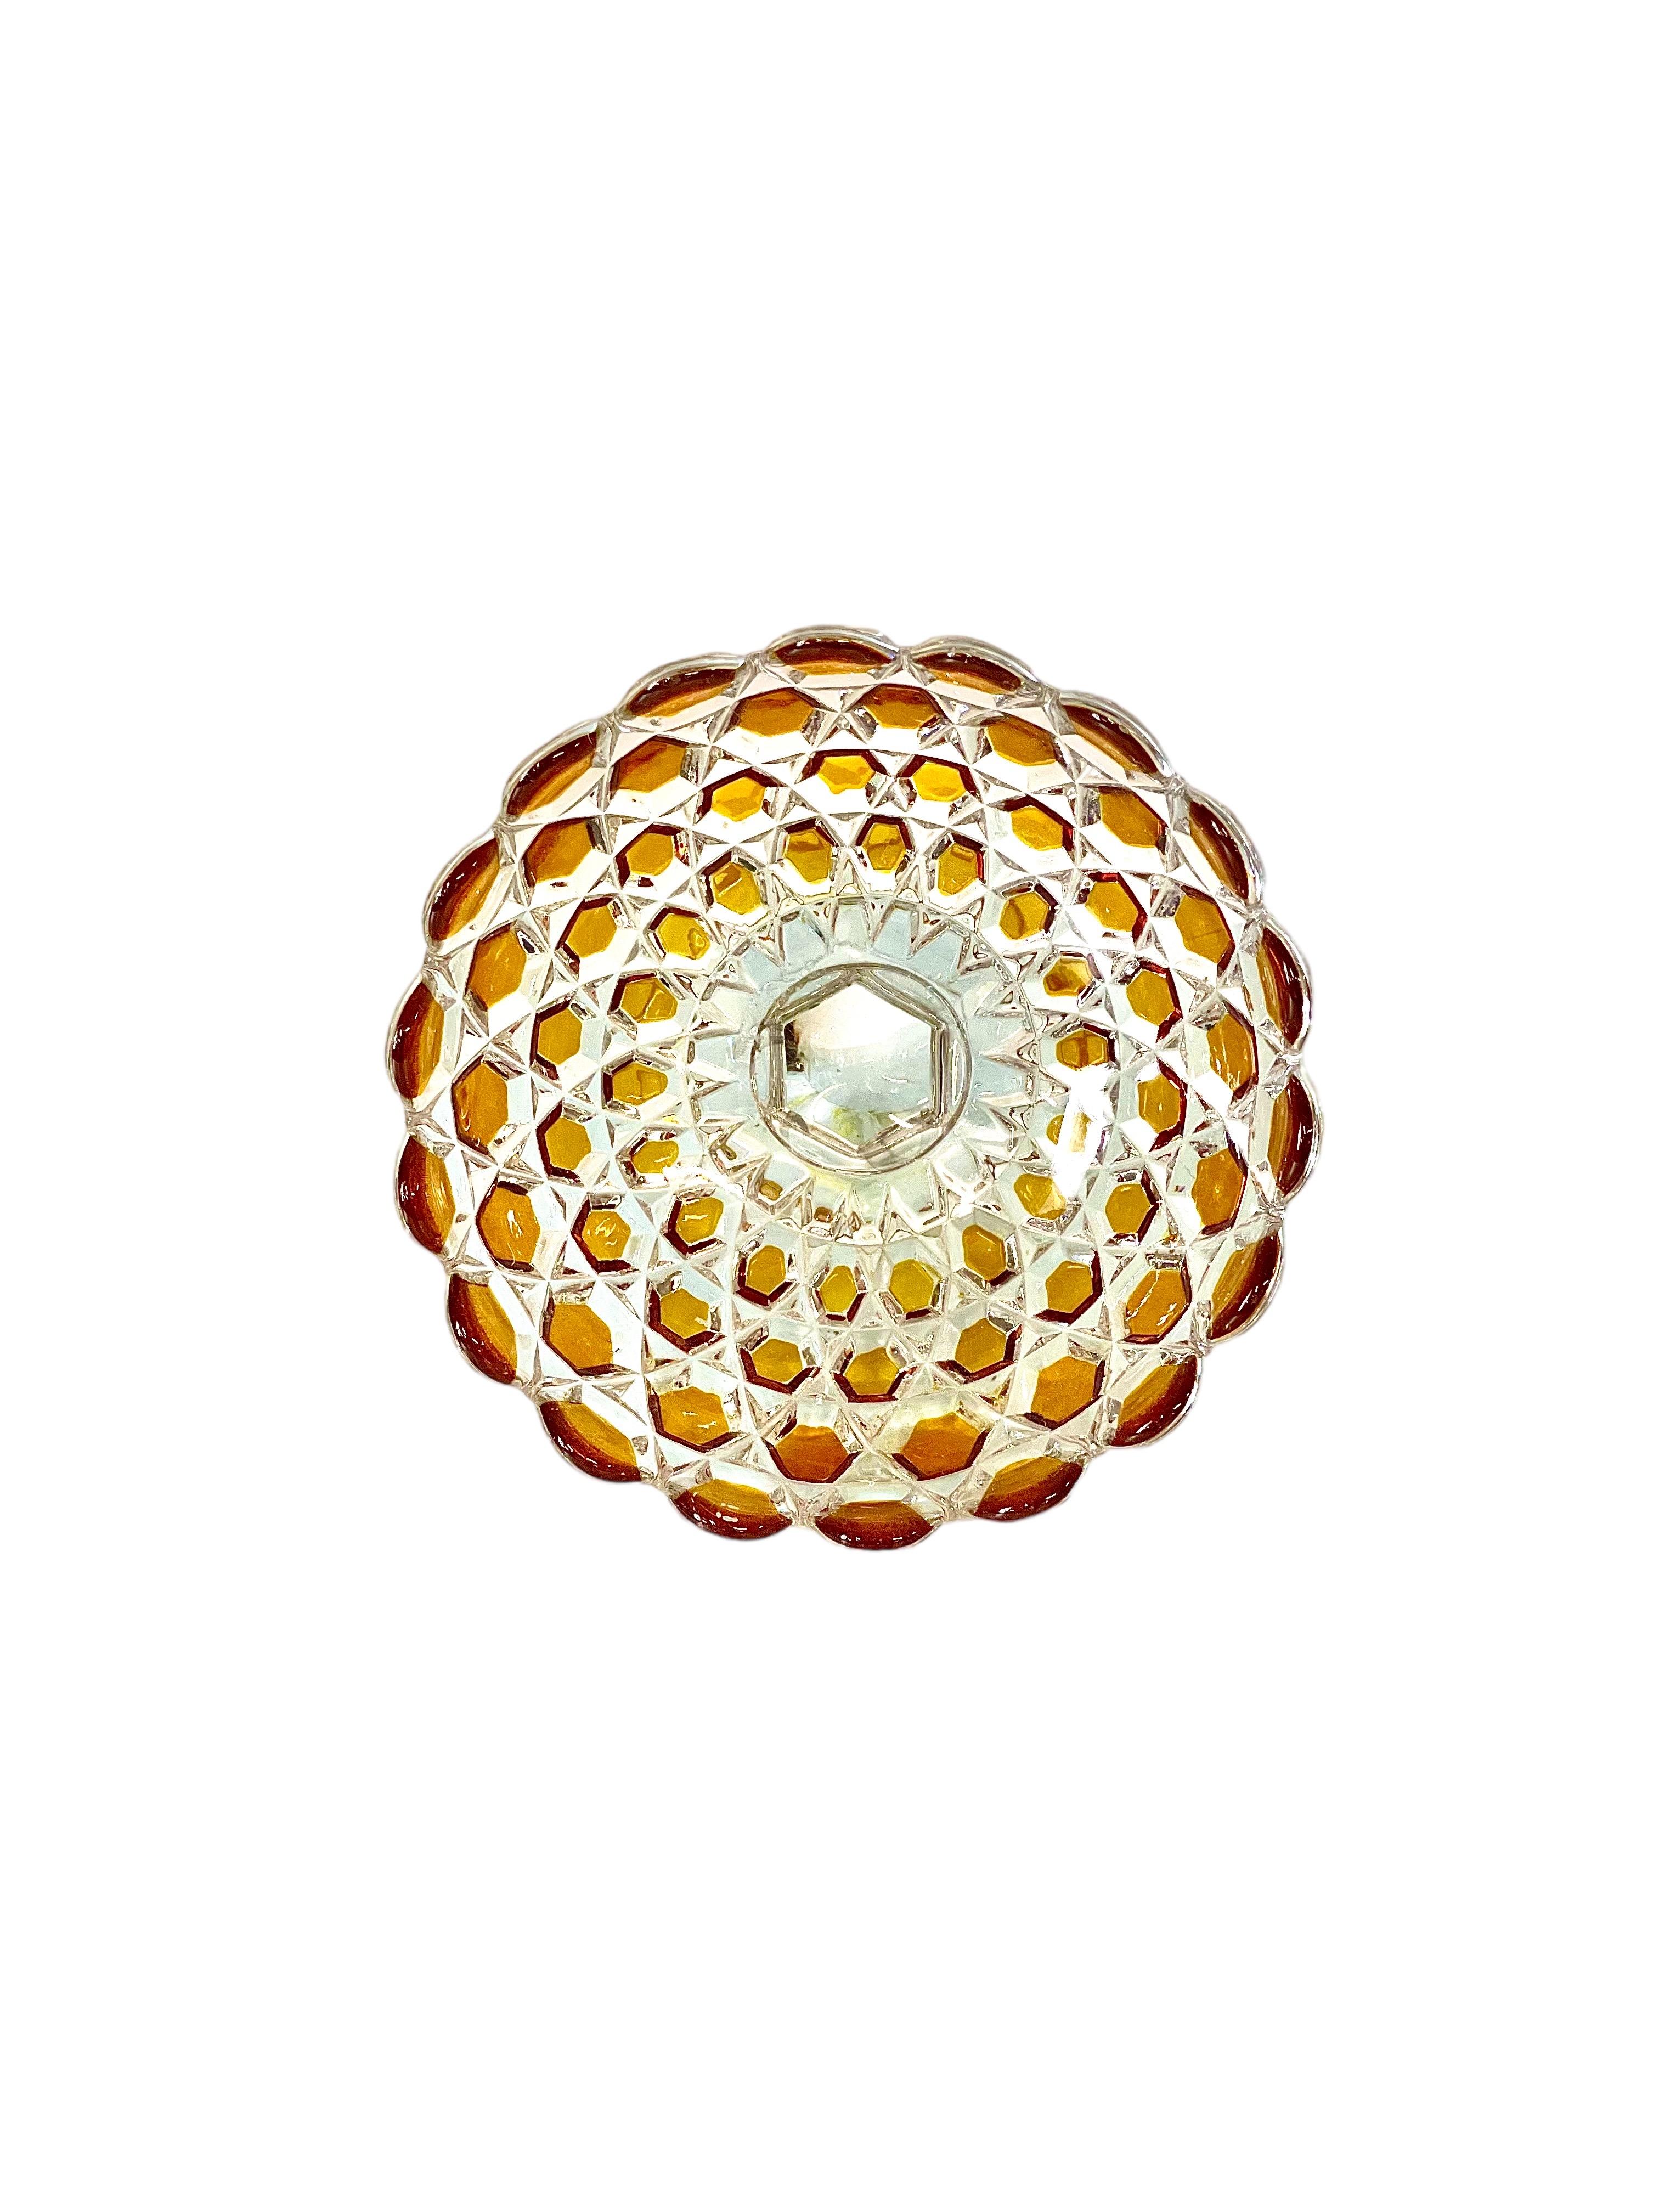 Bonbonnière en cristal taillé d'époque, ornée de motifs diamantés bicolores transparents et ambrés et d'un bord festonné très décoratif. Le plat, qui date du début du XXe siècle, repose sur une base merveilleusement façonnée, en forme de fleur à